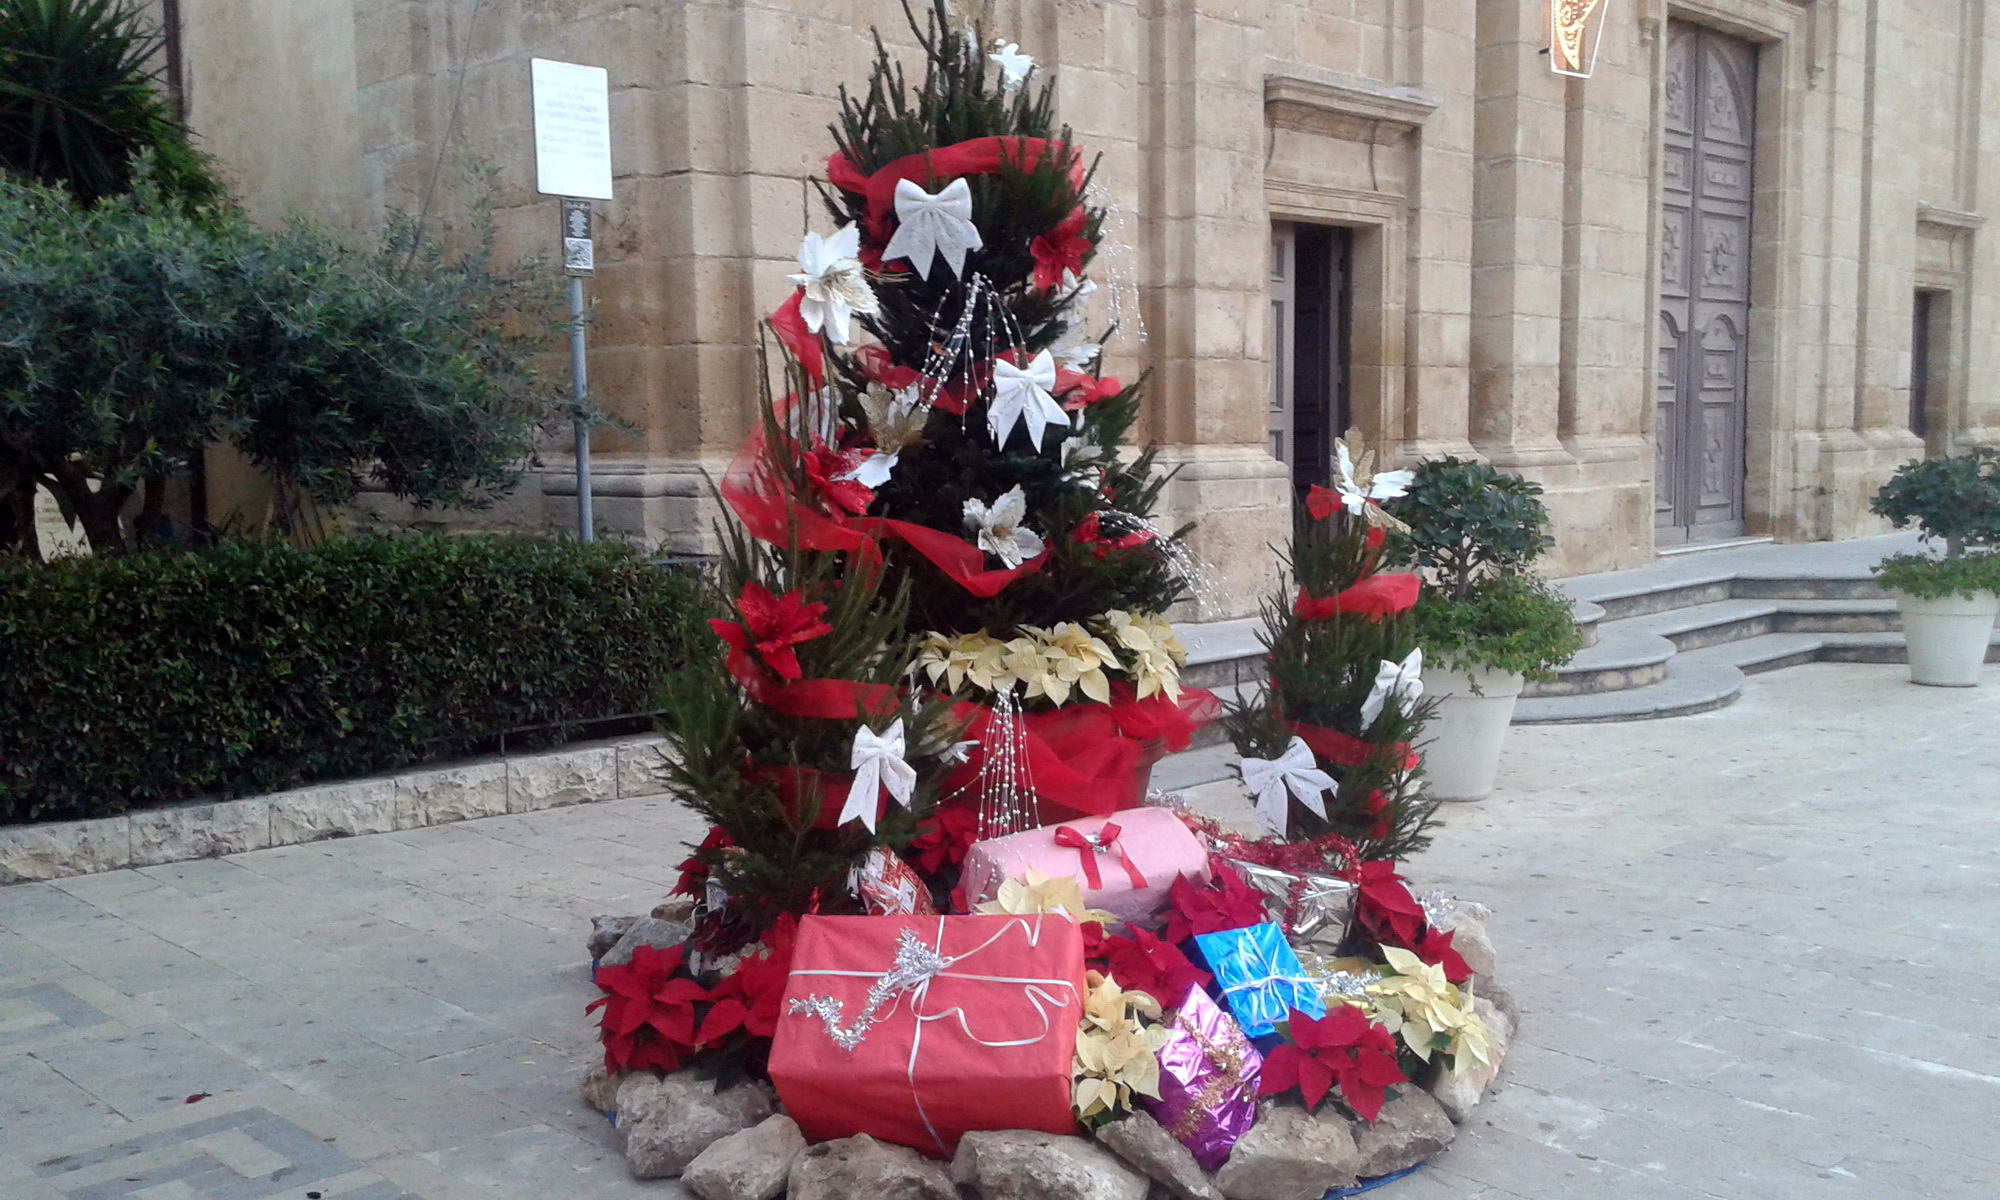  Natale, si muove qualcosa: assegnati 4mila euro per albero, luci e iniziative